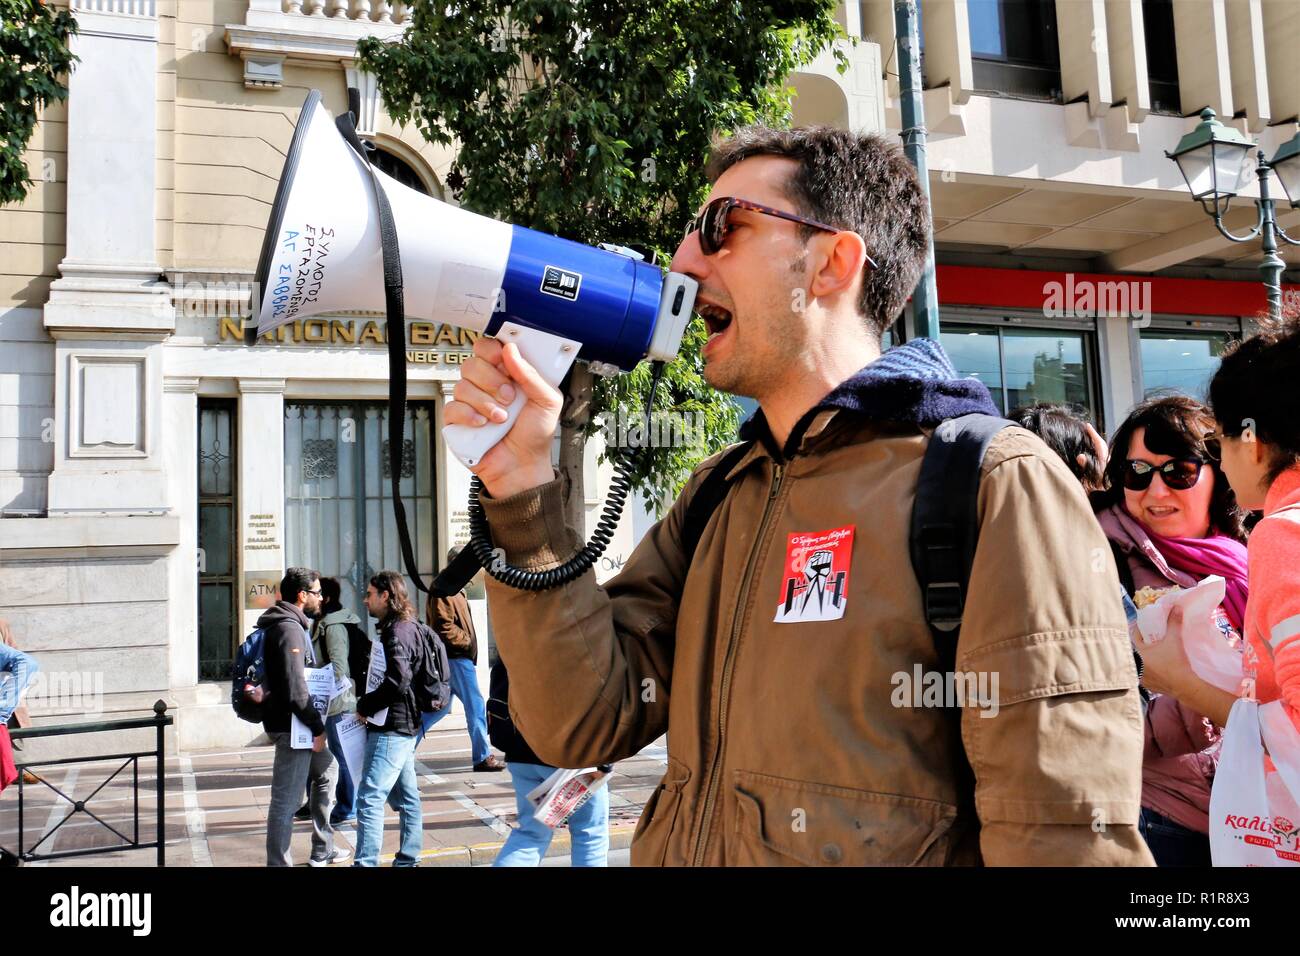 Vu un manifestant scandant des slogans sur un méga phone pendant la grève. Les Syndicats grecs et privé de Russie protester contre de nouvelles mesures d'austérité et aussi la demande pour un meilleur salaire et la modification du projet d'assurance. Banque D'Images